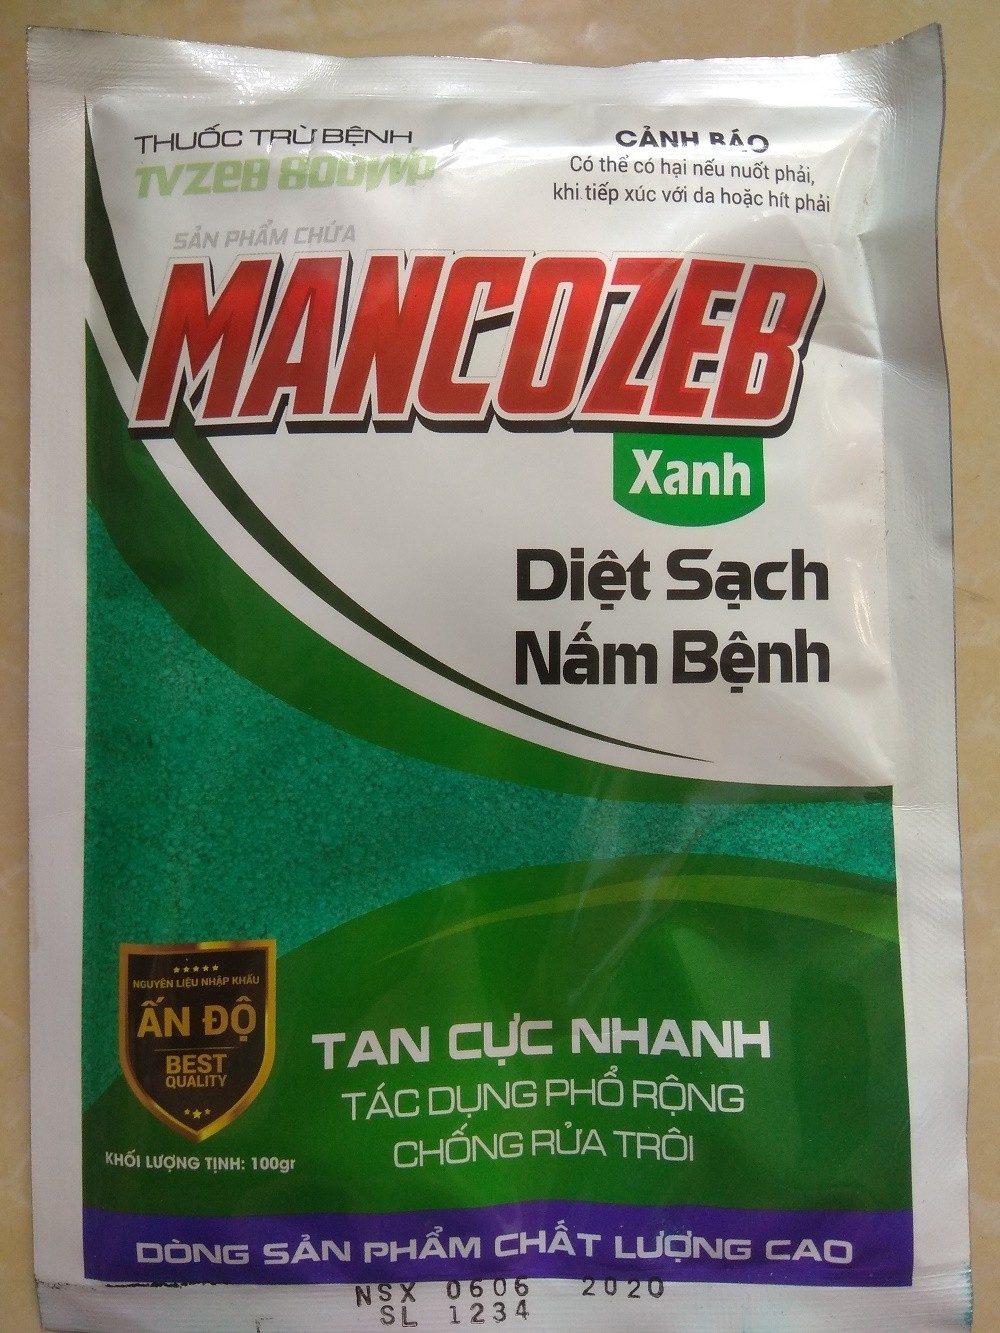 Trừ nấm bệnh TVZEB 800WP có chứa MANCOZEB Xanh - gói 100 gram